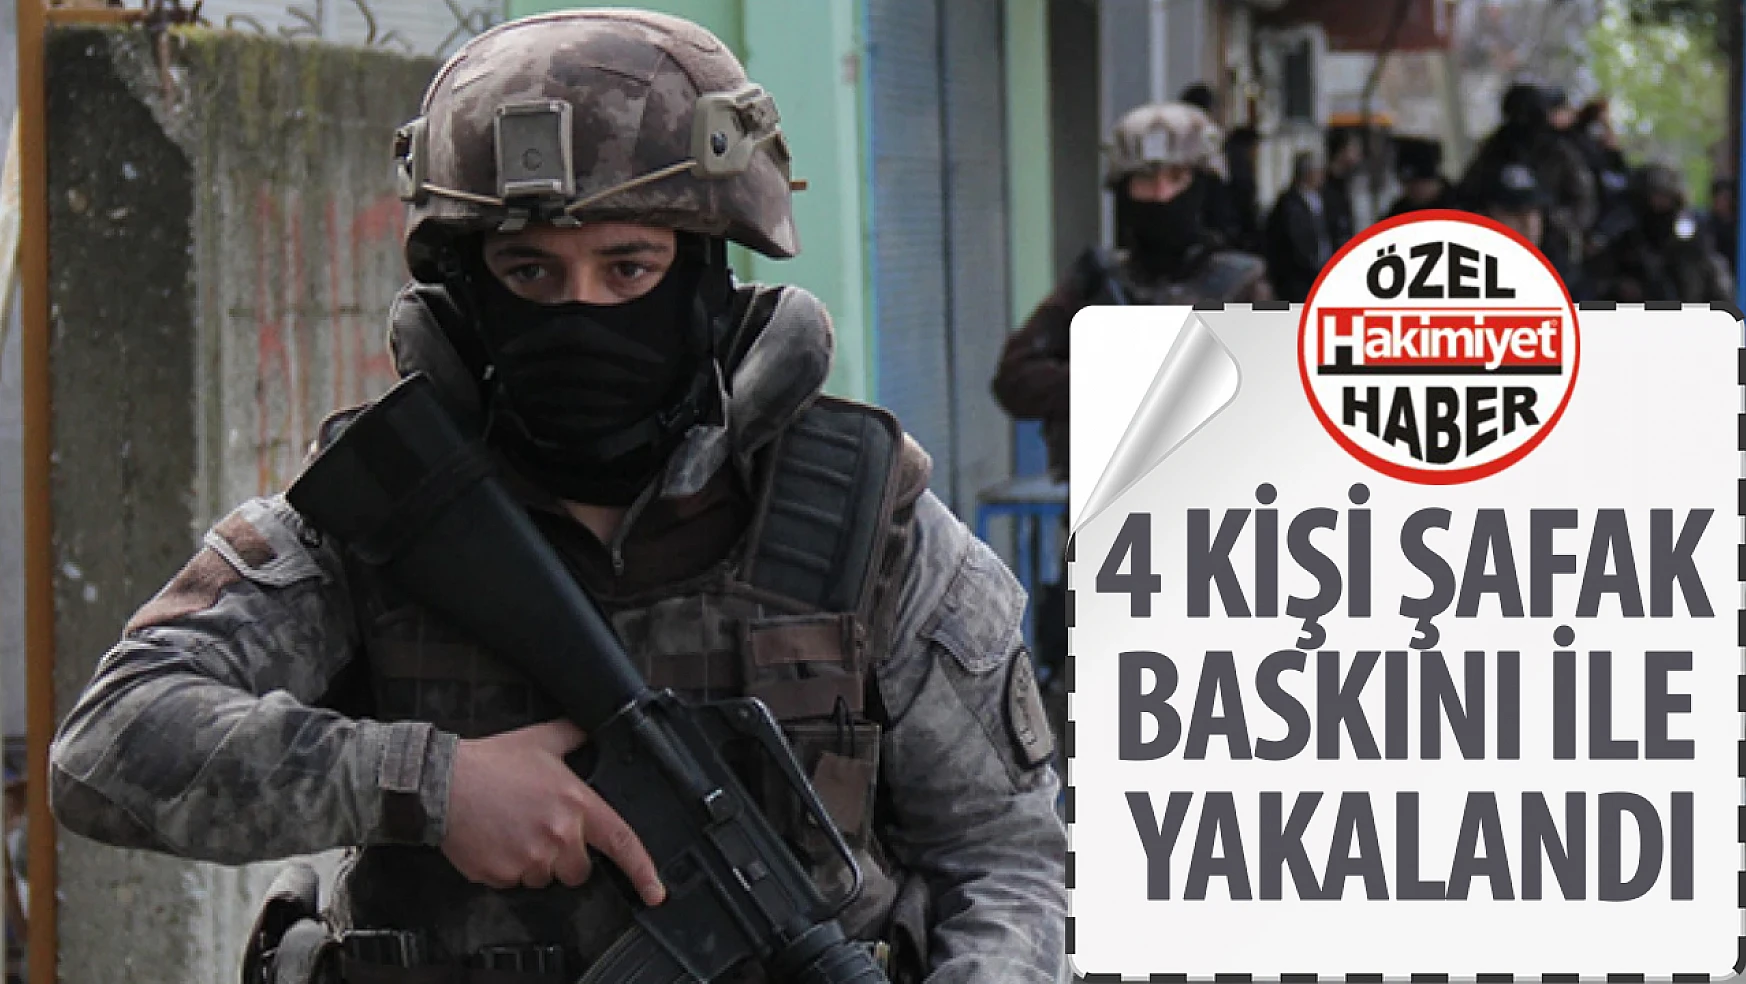 Konya'da terör operasyonu 4 kişi şafak baskını ile yakalandı